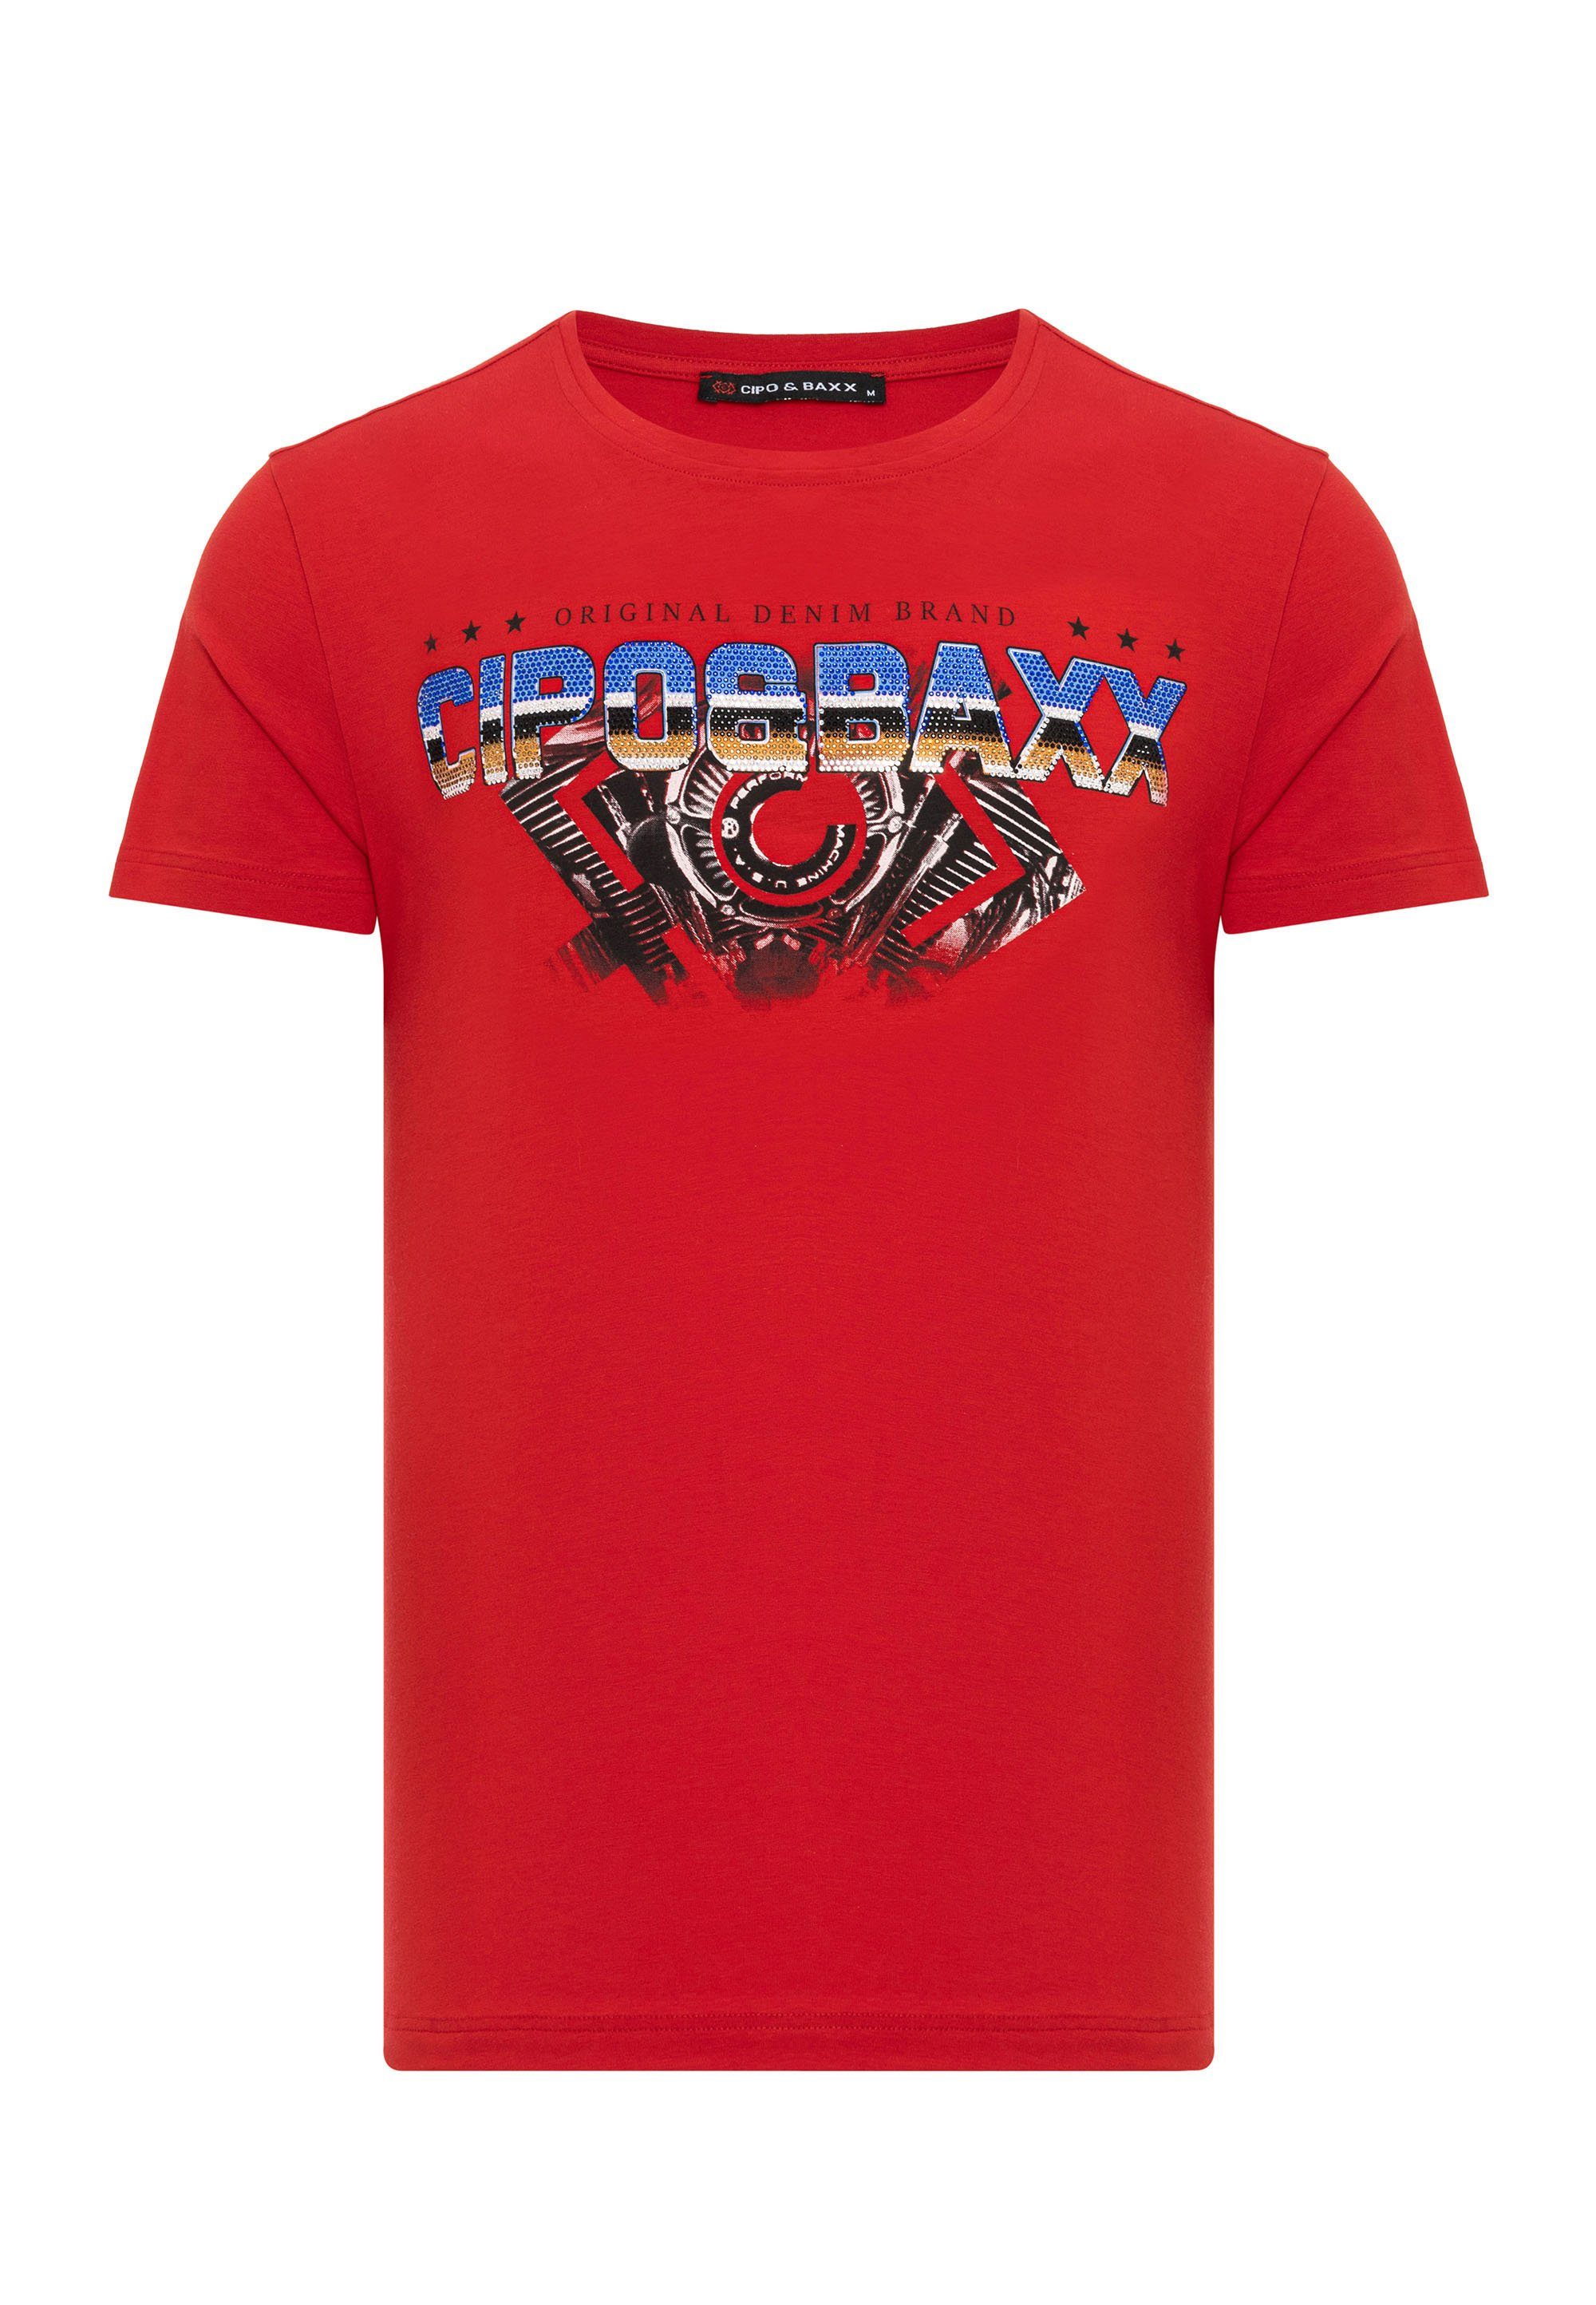 mit Baxx & Marken-Schriftzug T-Shirt rot trendigem Cipo